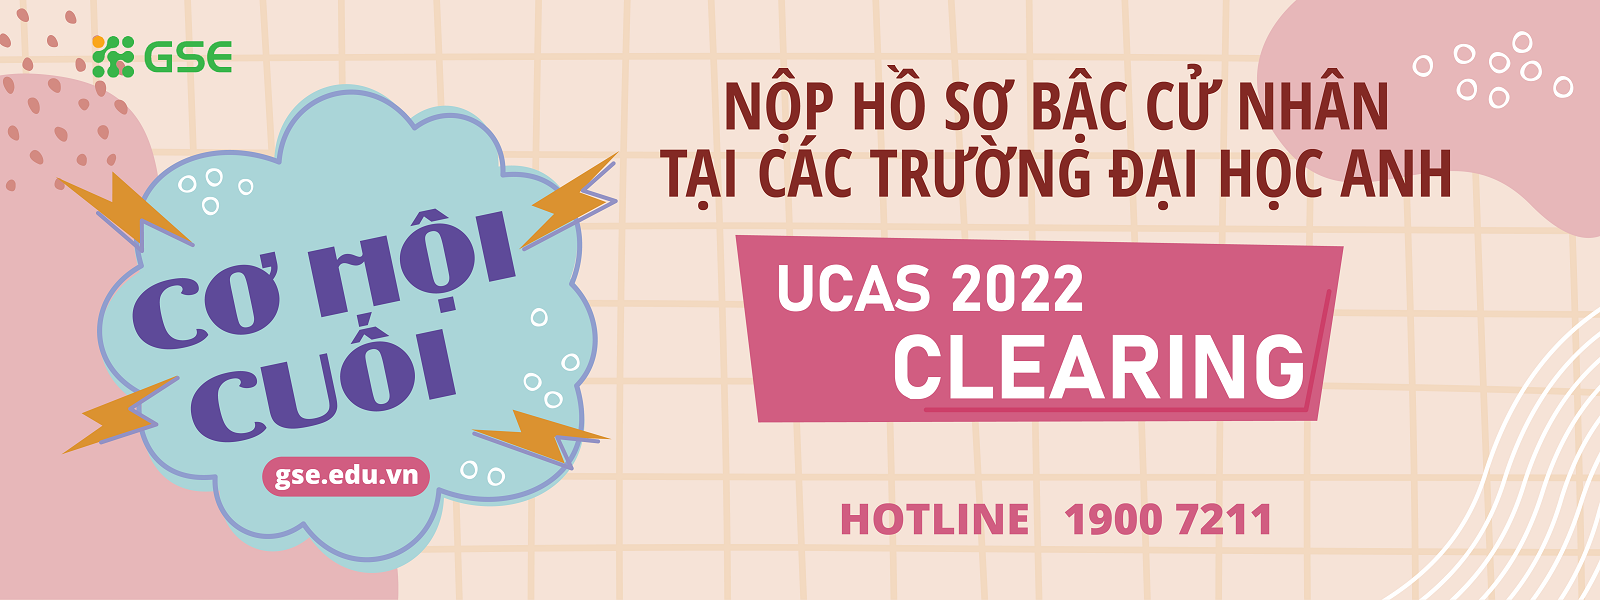 Du Hoc Dai Hoc Anh Quoc Ucas Clearing 2022 Tu Van Du Hoc Gse 1600x600